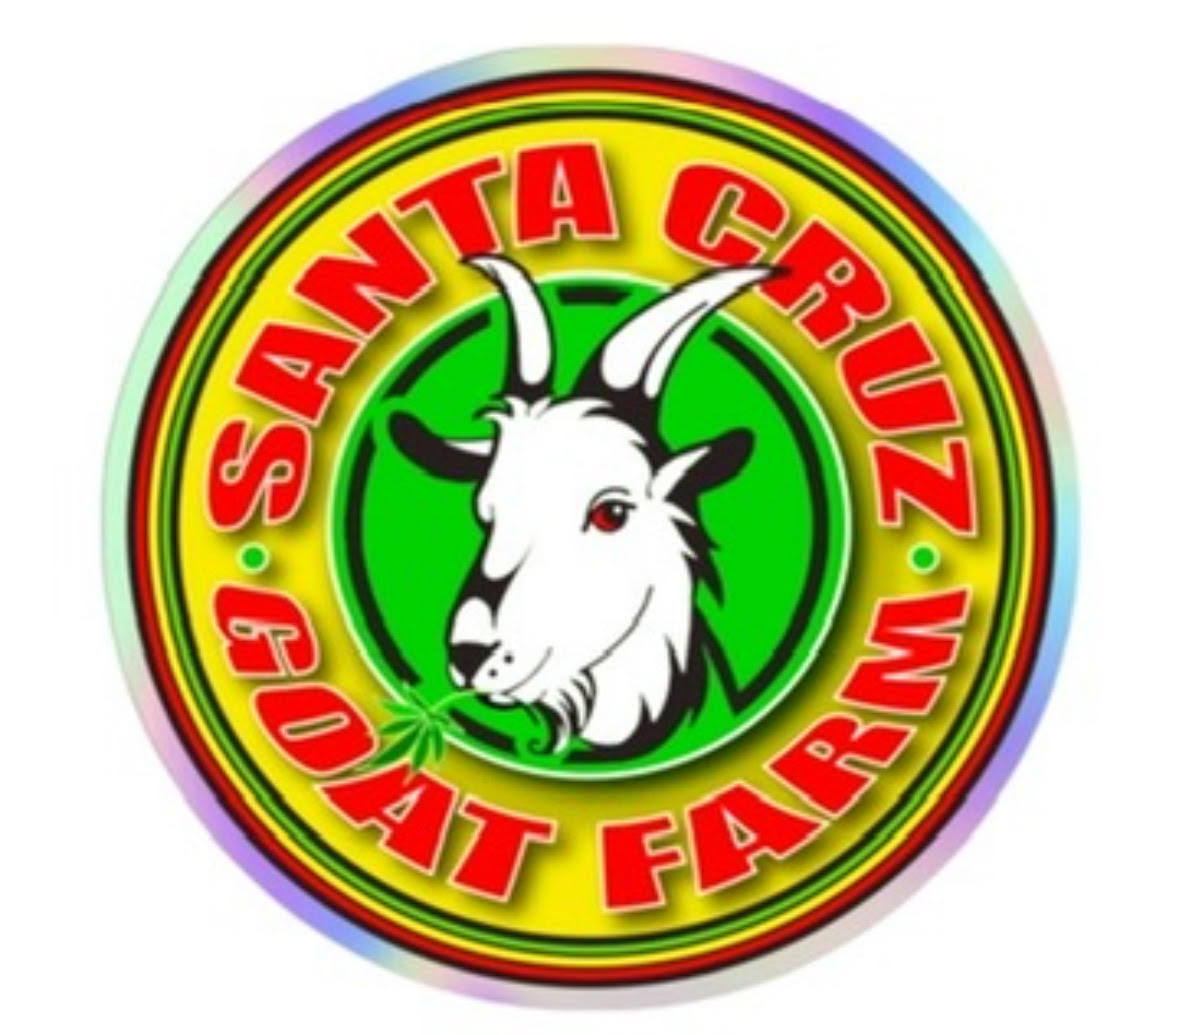 Santa Cruz Goat Farm